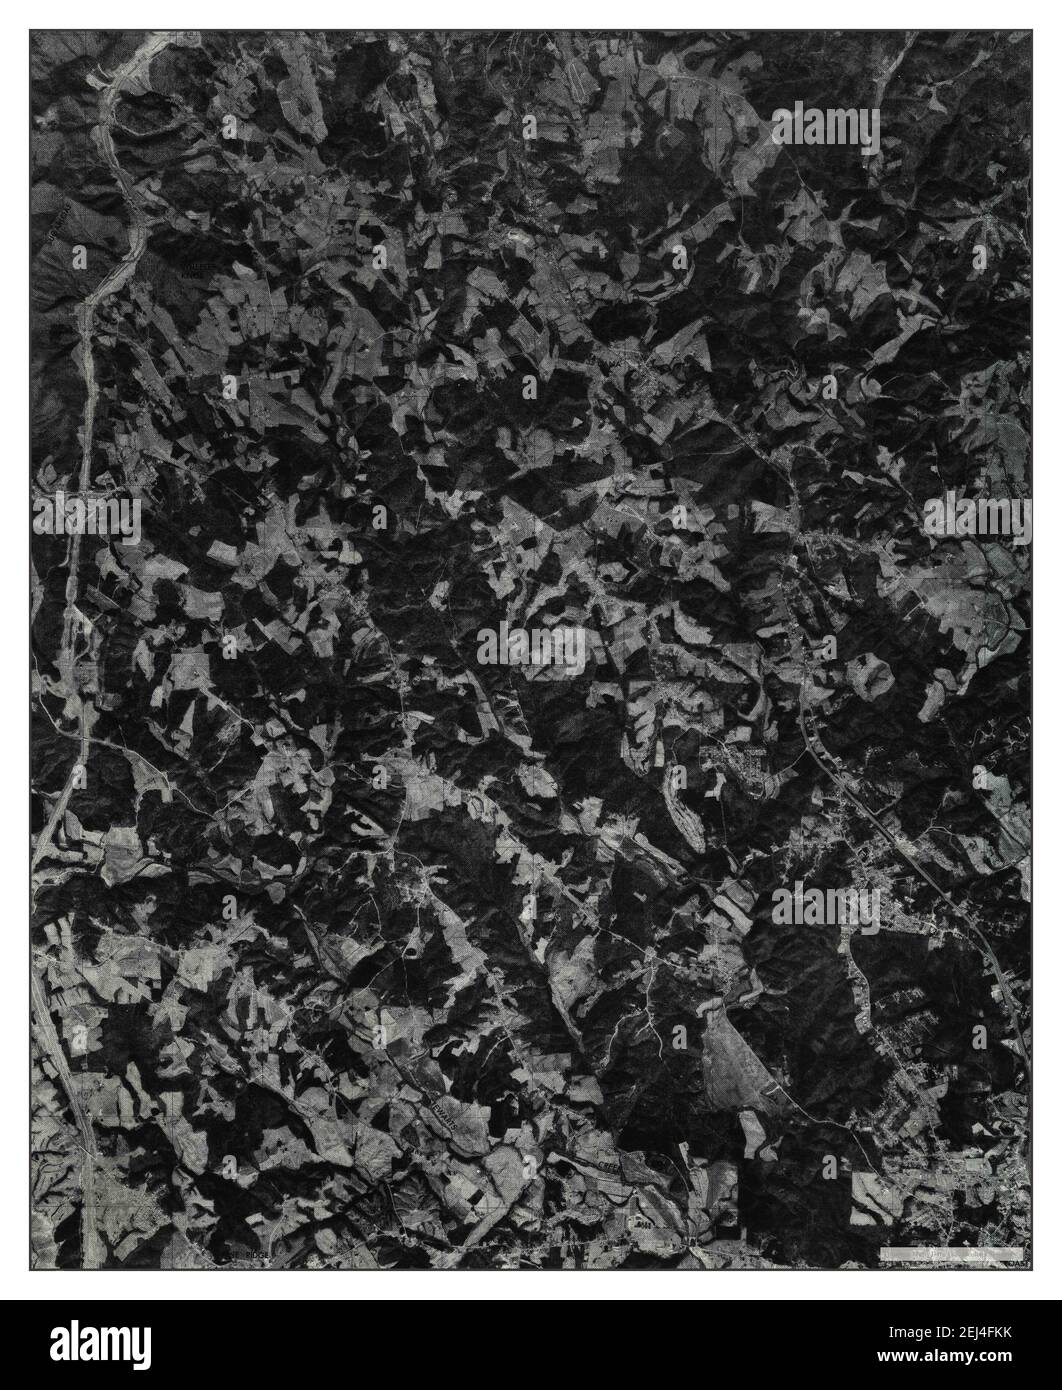 Cana, Virginie, carte 1976, 1:24000, États-Unis d'Amérique par Timeless Maps, données U.S. Geological Survey Banque D'Images